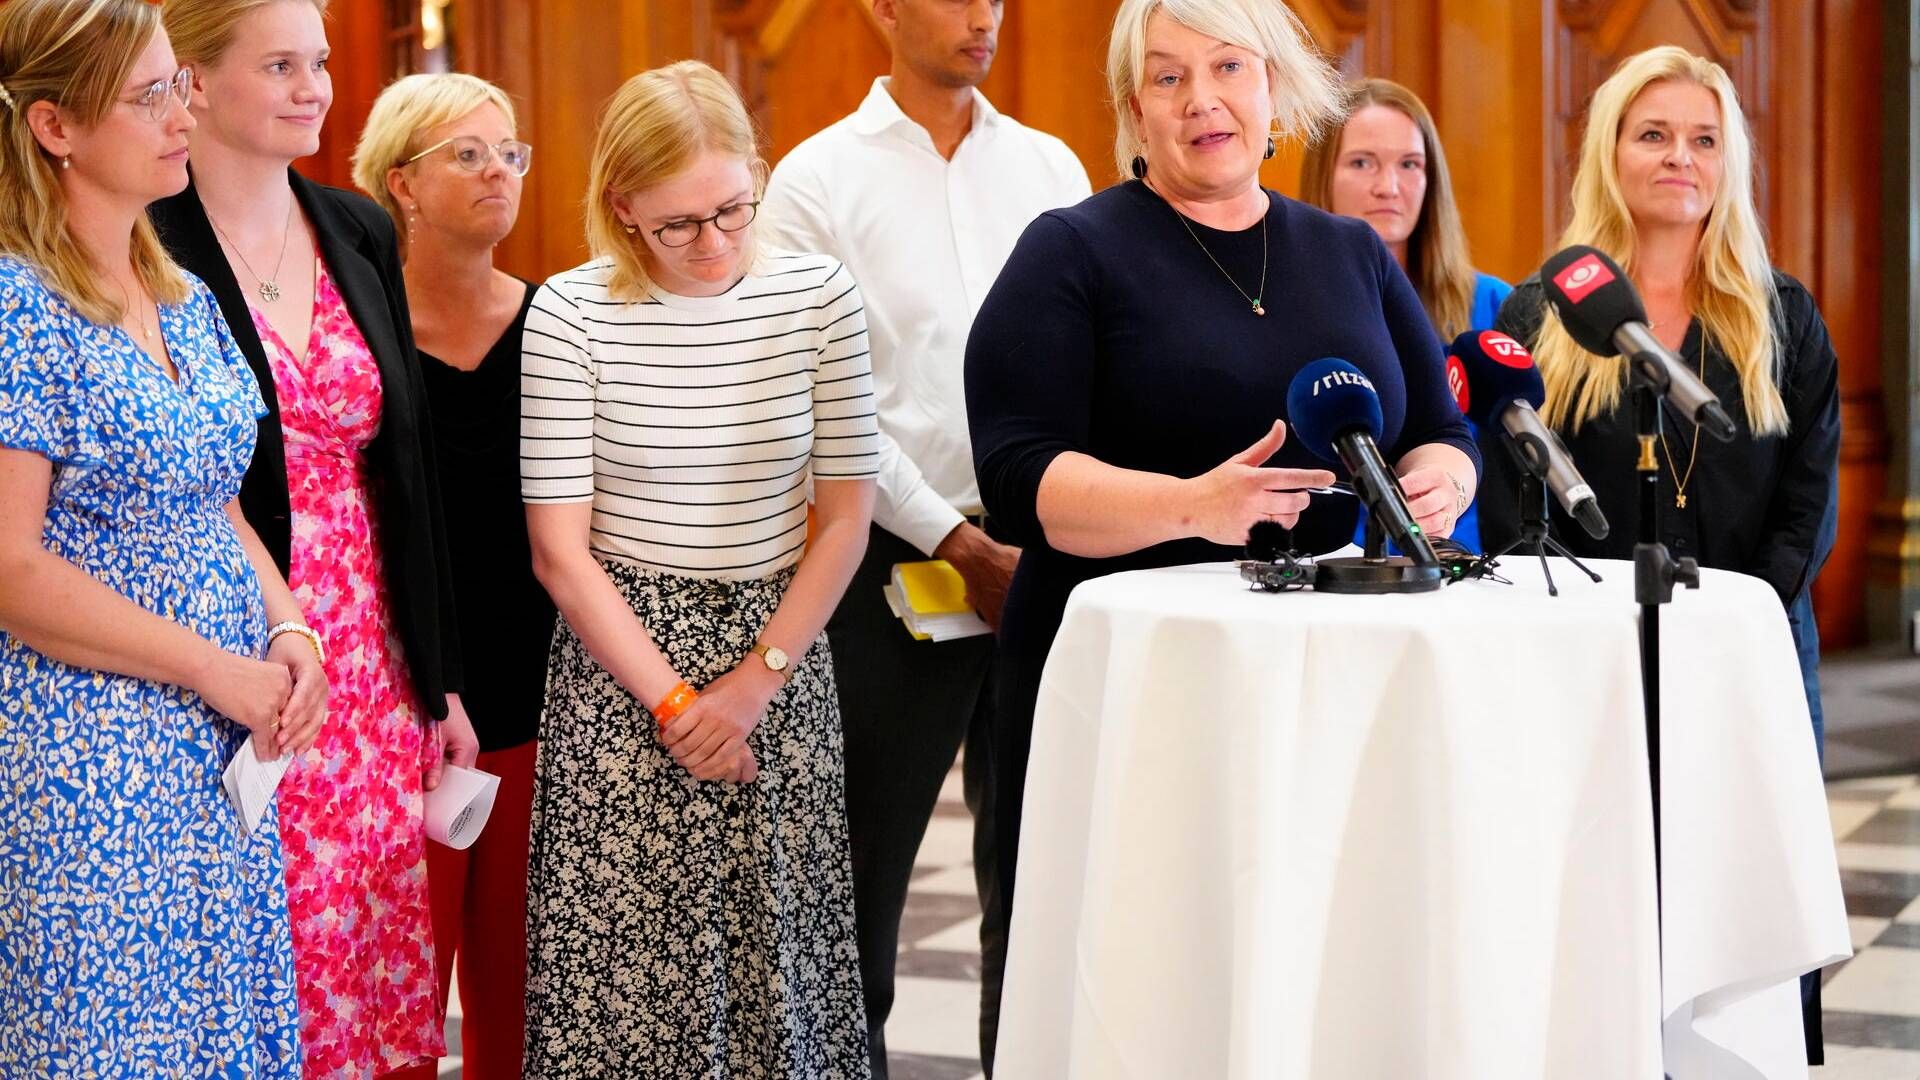 Uddannelses- og forskningsminister Christina Egelund præsenterer sammen med ordførere fra aftalepartierne den nye uddannelsesreform. | Foto: Liselotte Sabroe/Ritzau Scanpix